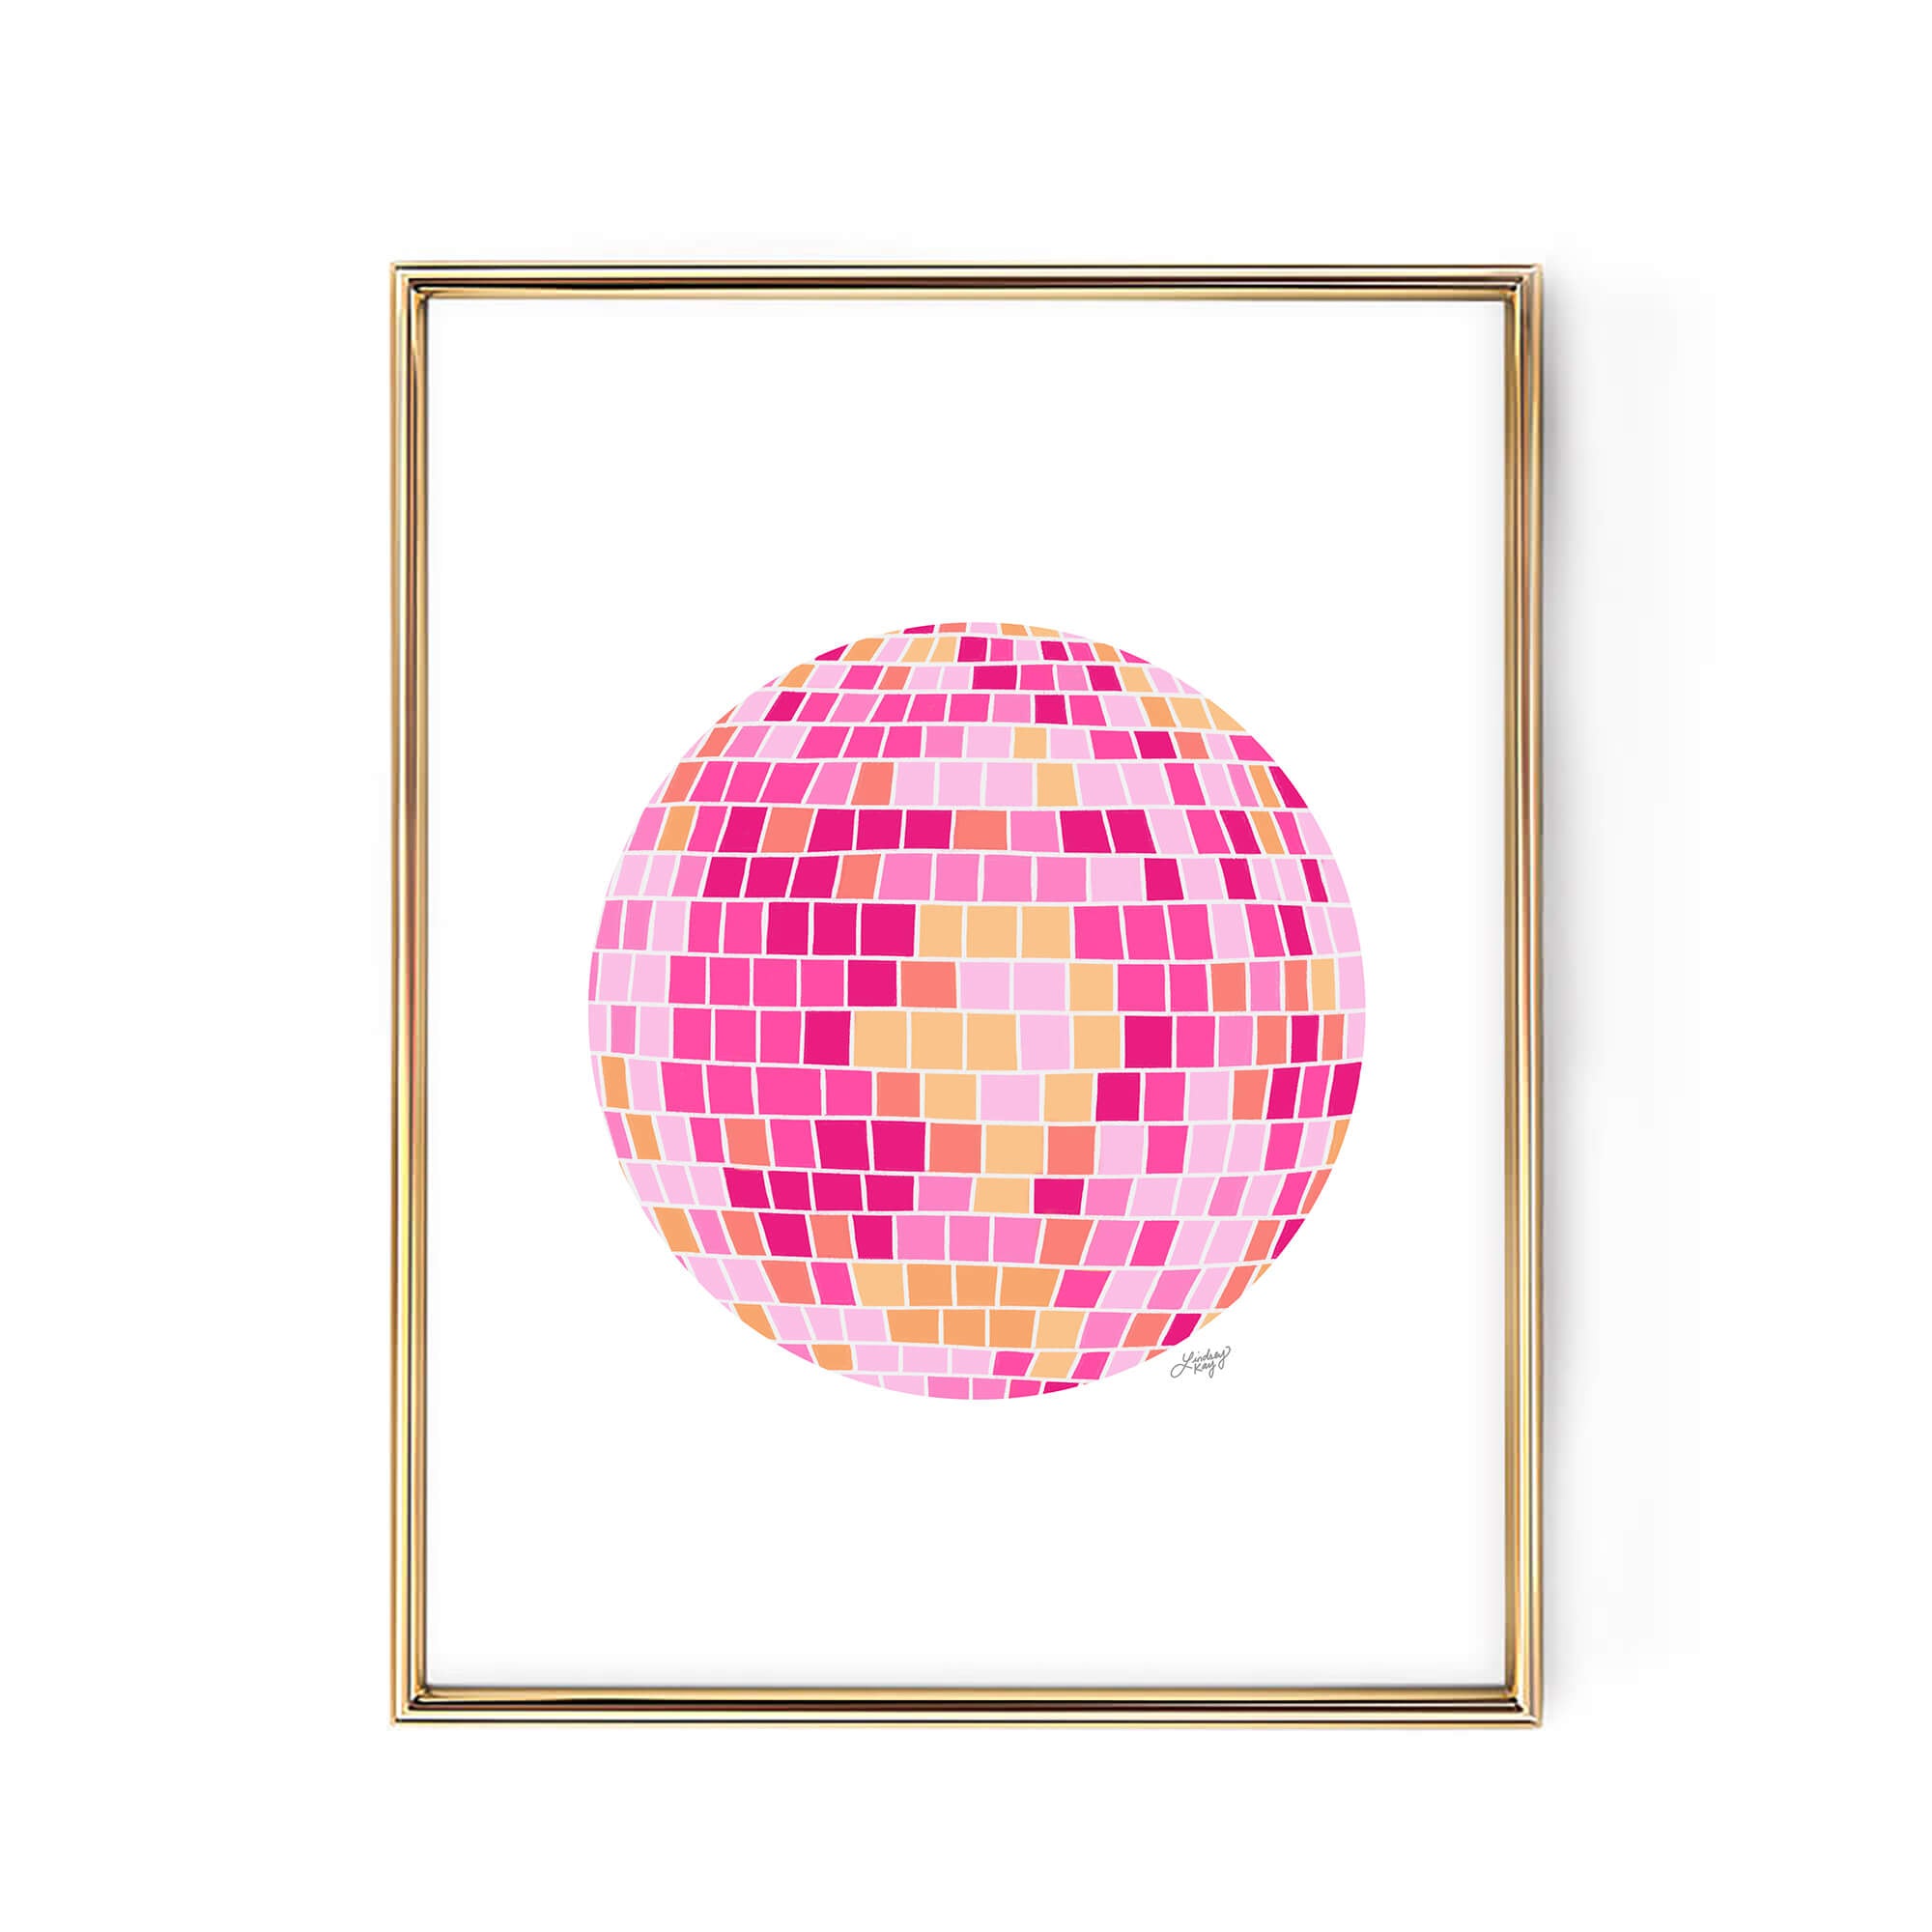 Ilustración de bola de discoteca (paleta rosa/amarilla) - Impresión de arte